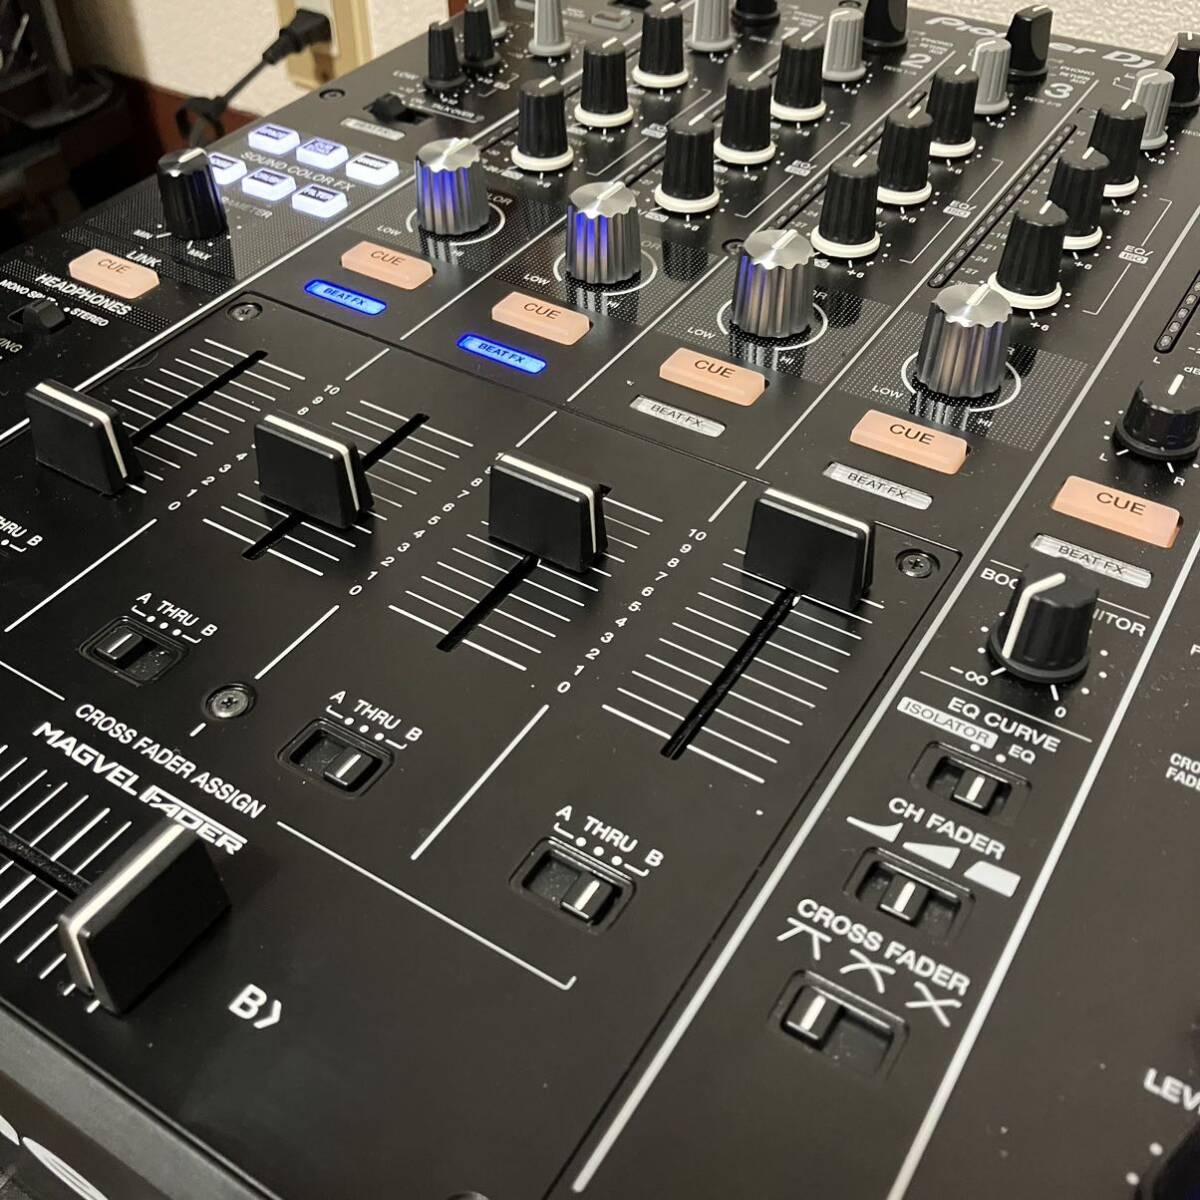 Pioneer DJ Professional DJ миксер DJM-900NXS2 Night Club DJ машинное оборудование музыка fes. стандартный машинное оборудование 